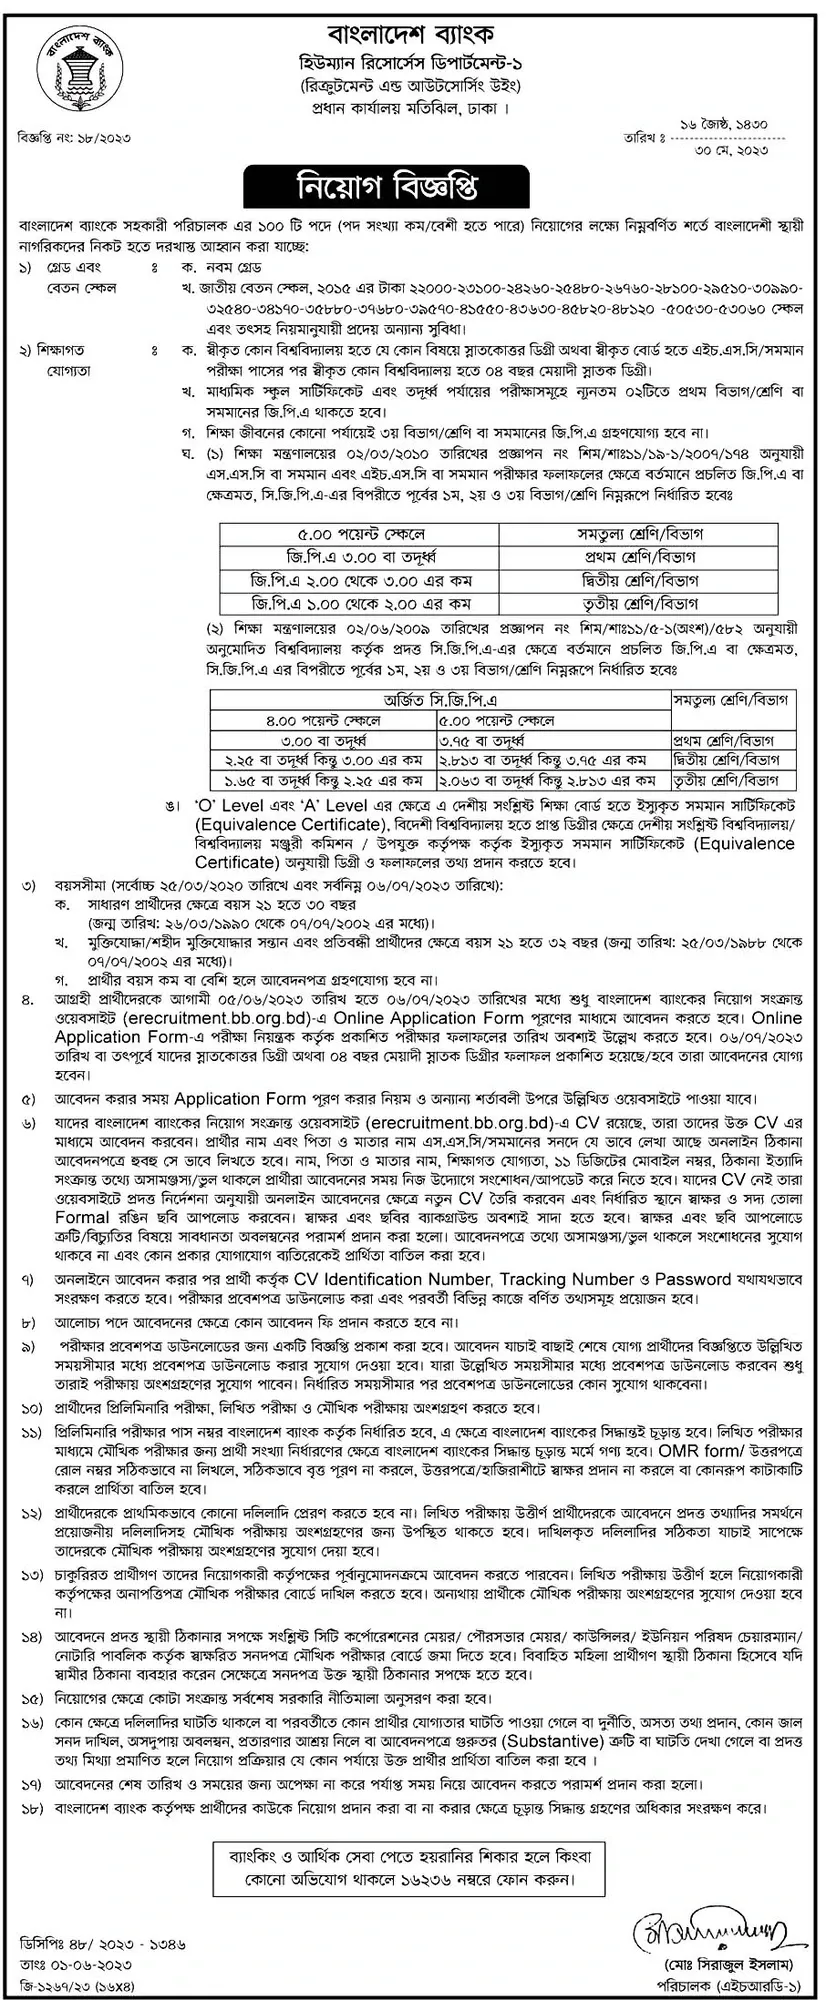 বাংলাদেশ ব্যাংক চাকরির খবর ২০২৩ Bangladesh Bank Job Circular 2023